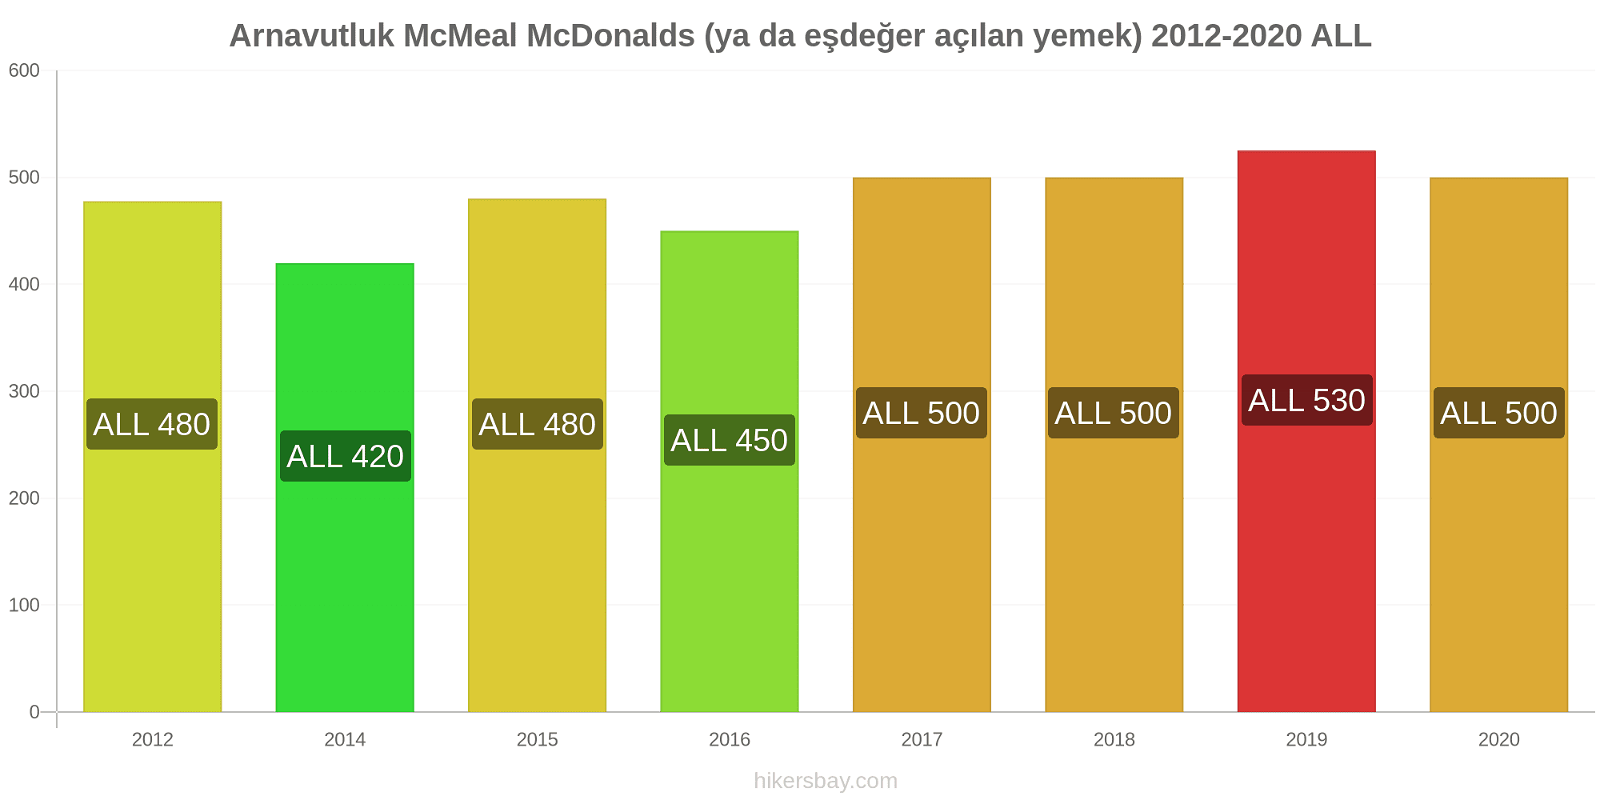 Arnavutluk fiyat değişiklikleri McMeal McDonalds (ya da eşdeğer açılan yemek) hikersbay.com